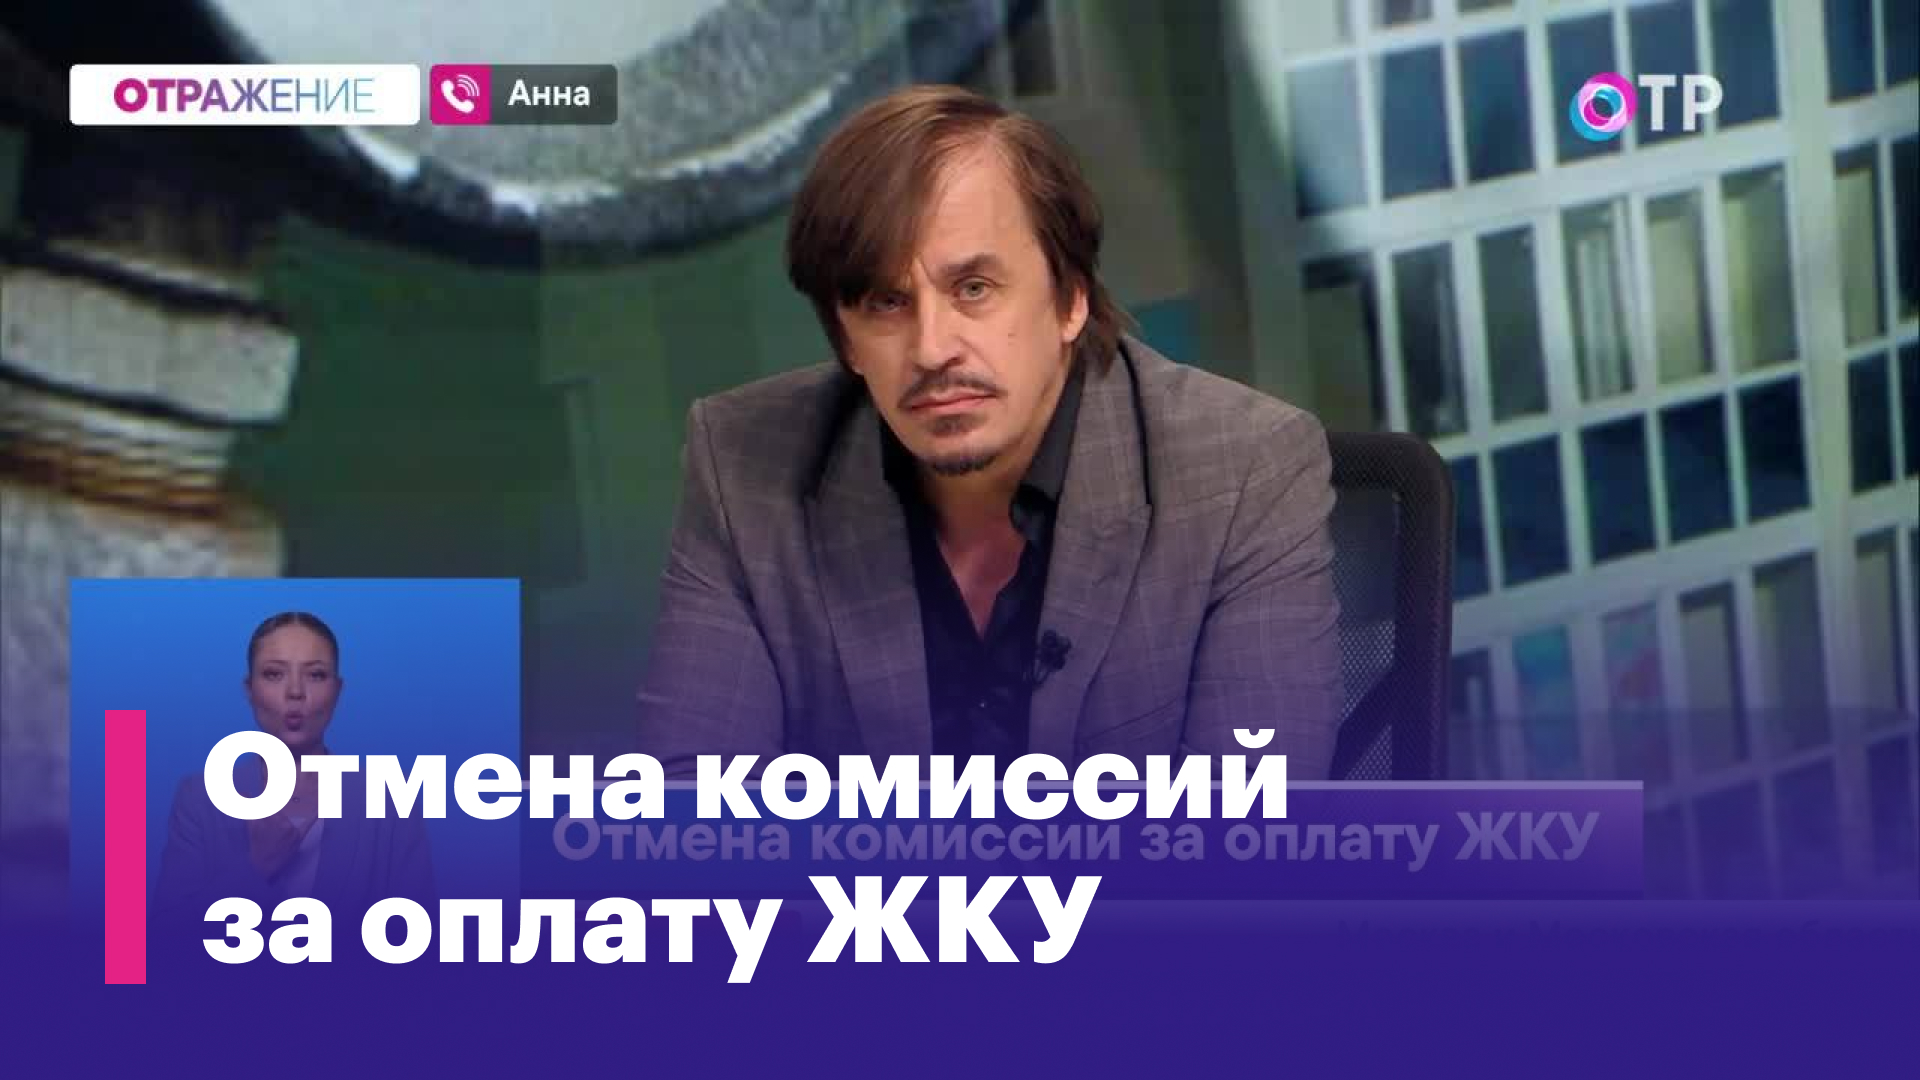 Владимир Карачаровский: Не должно быть бесплатного труда и незаслуженного обогащения